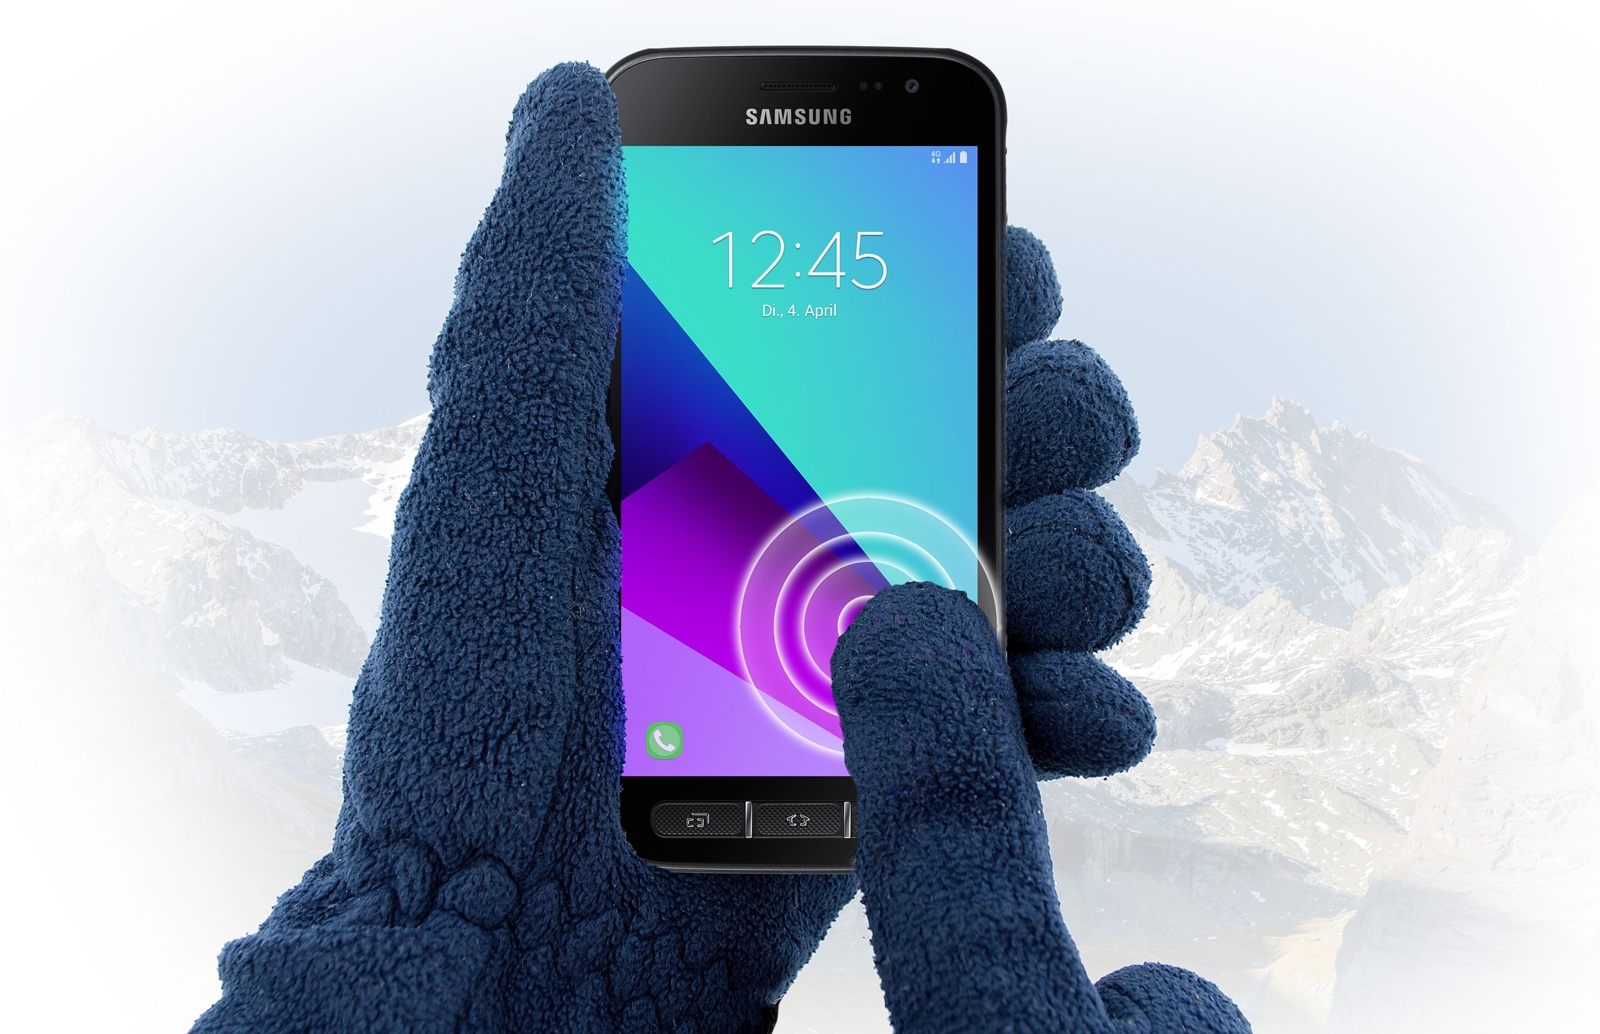 Samsung zaktualizował chroniony smartfon Galaxy Xcover 4 2017 do Android Pie